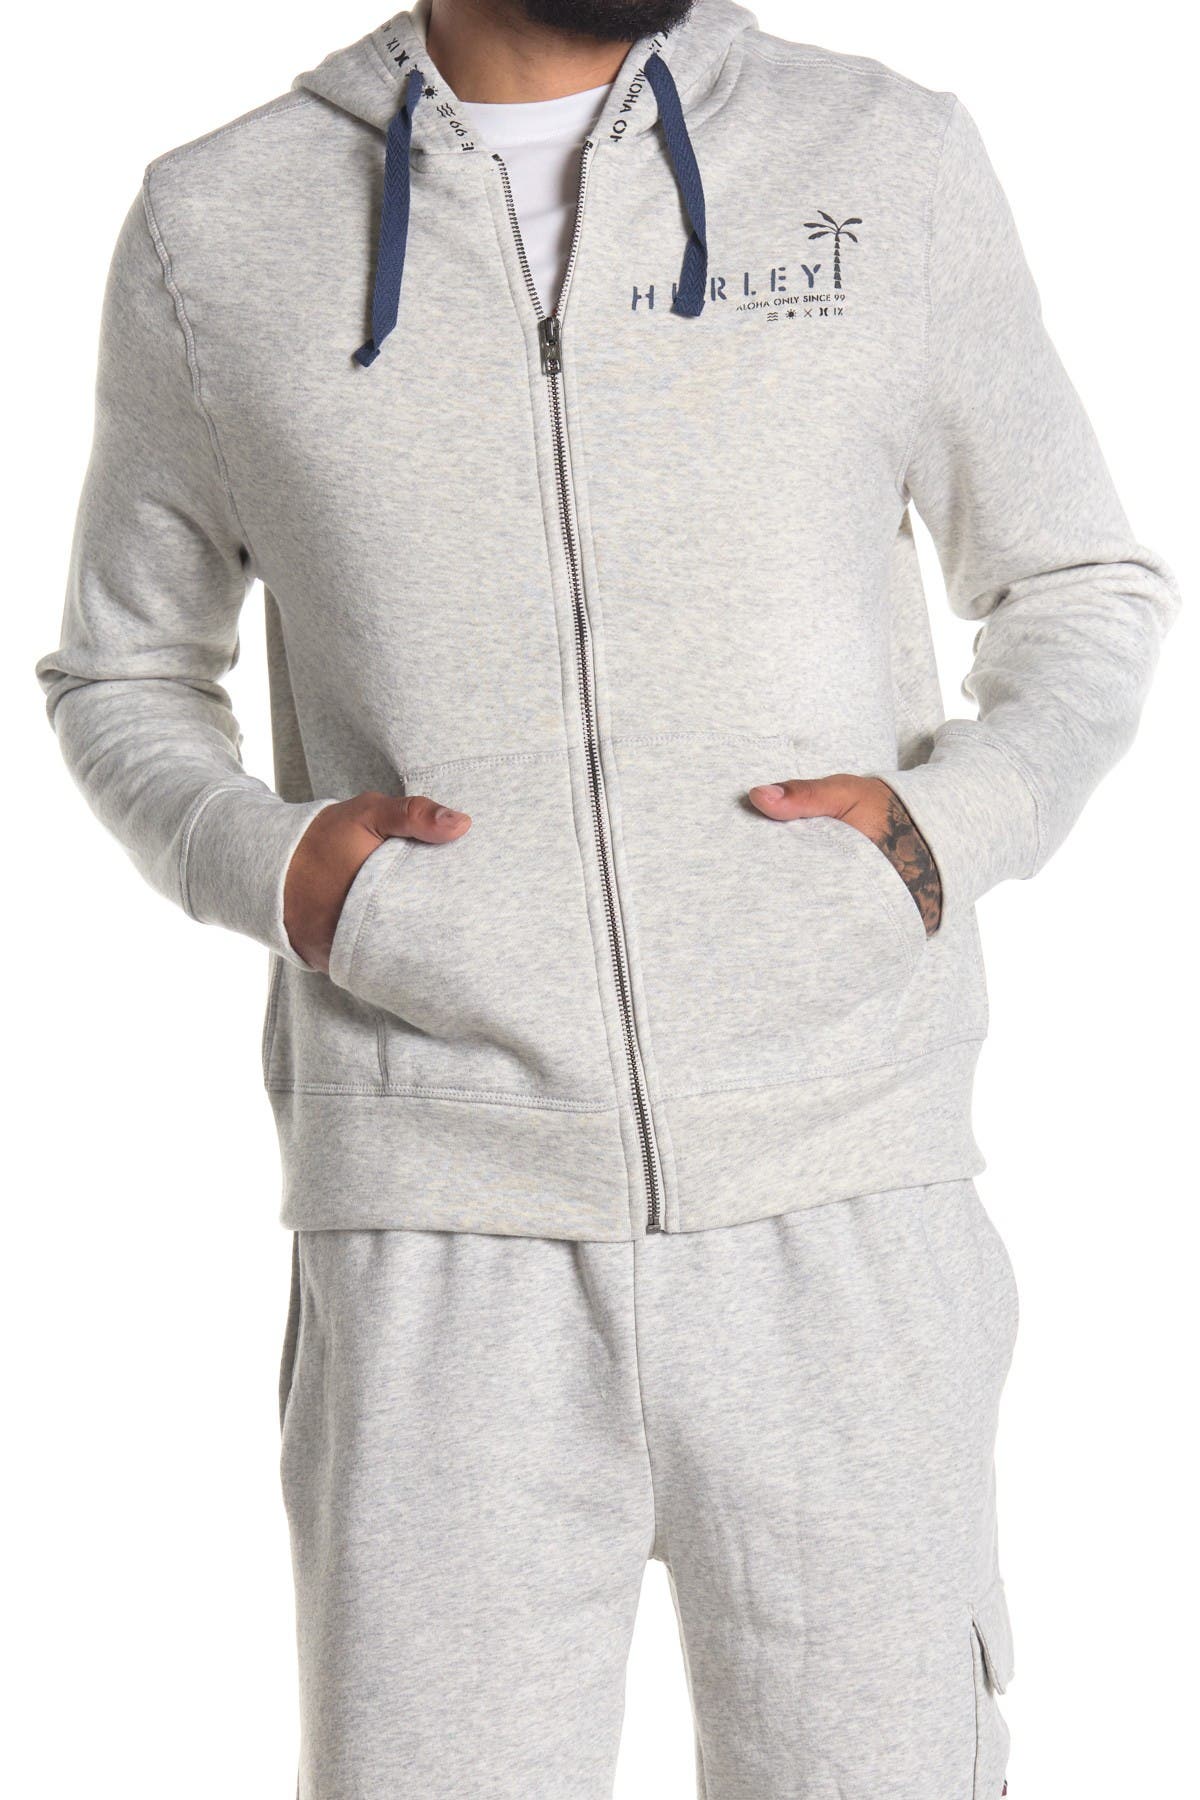 Hurley Logo Fleece Zip Hoodie In Medium Grey9